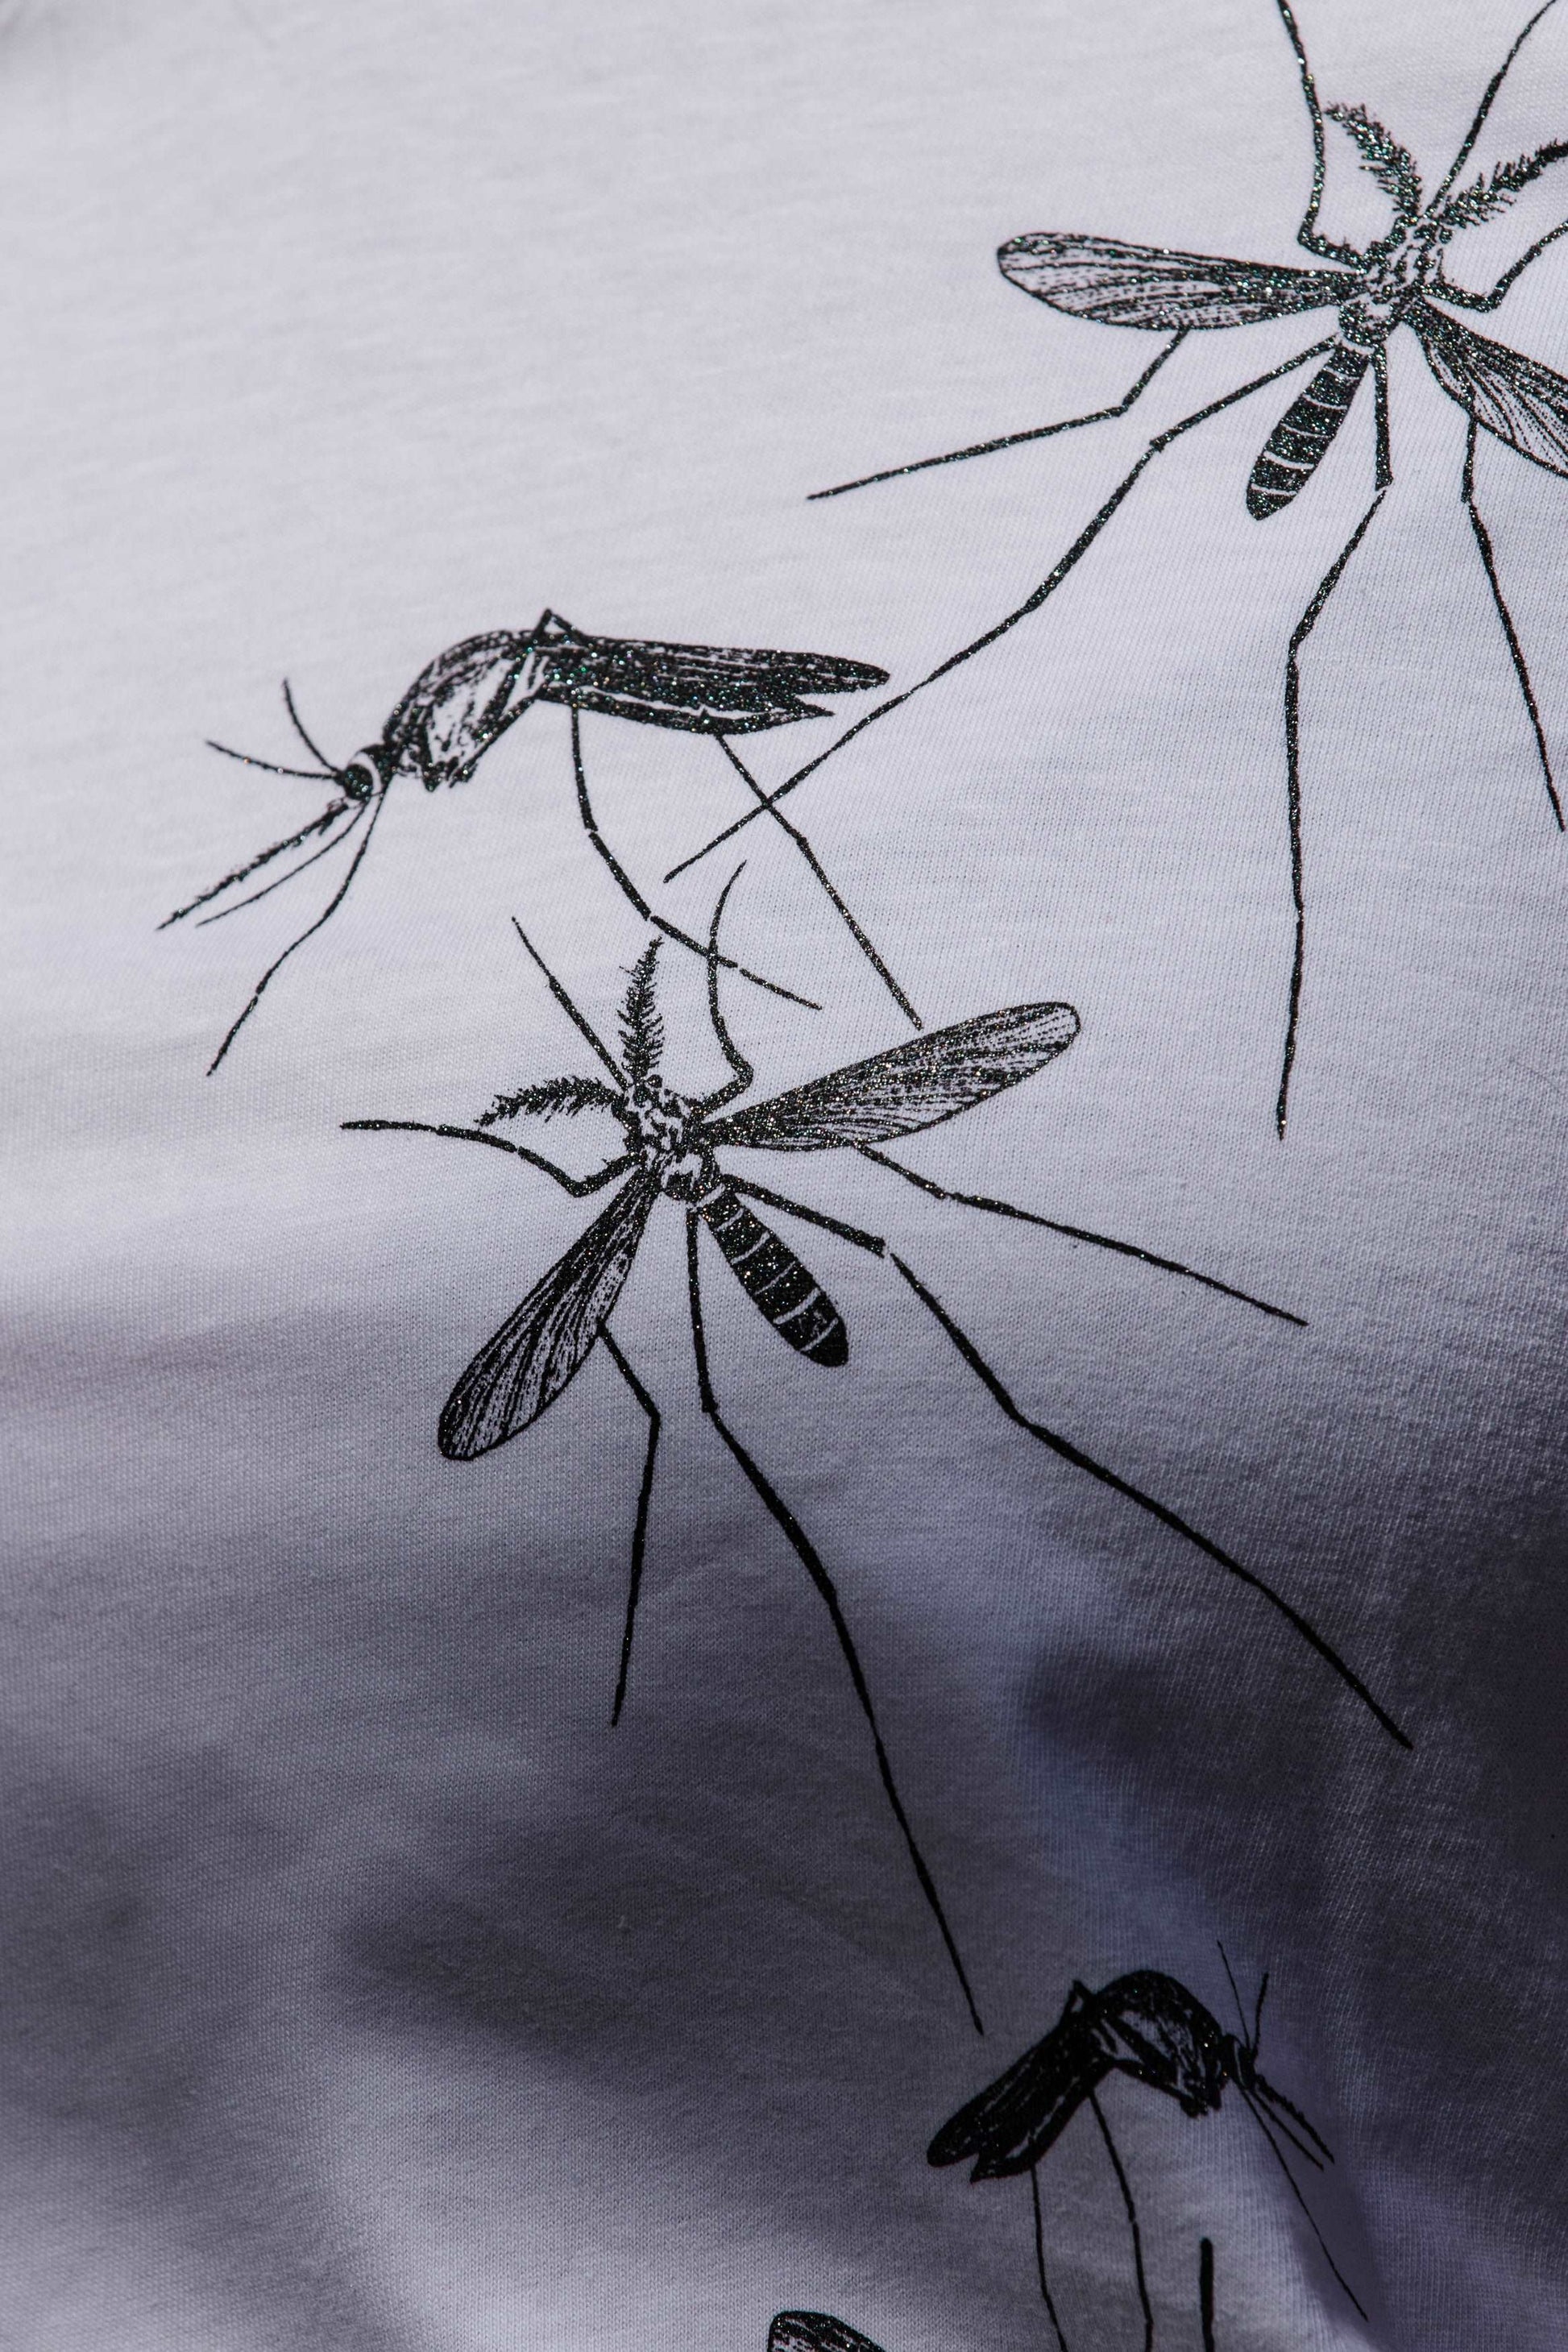 Družina komarjev - ženski ali unisex model - 120 g bombaž